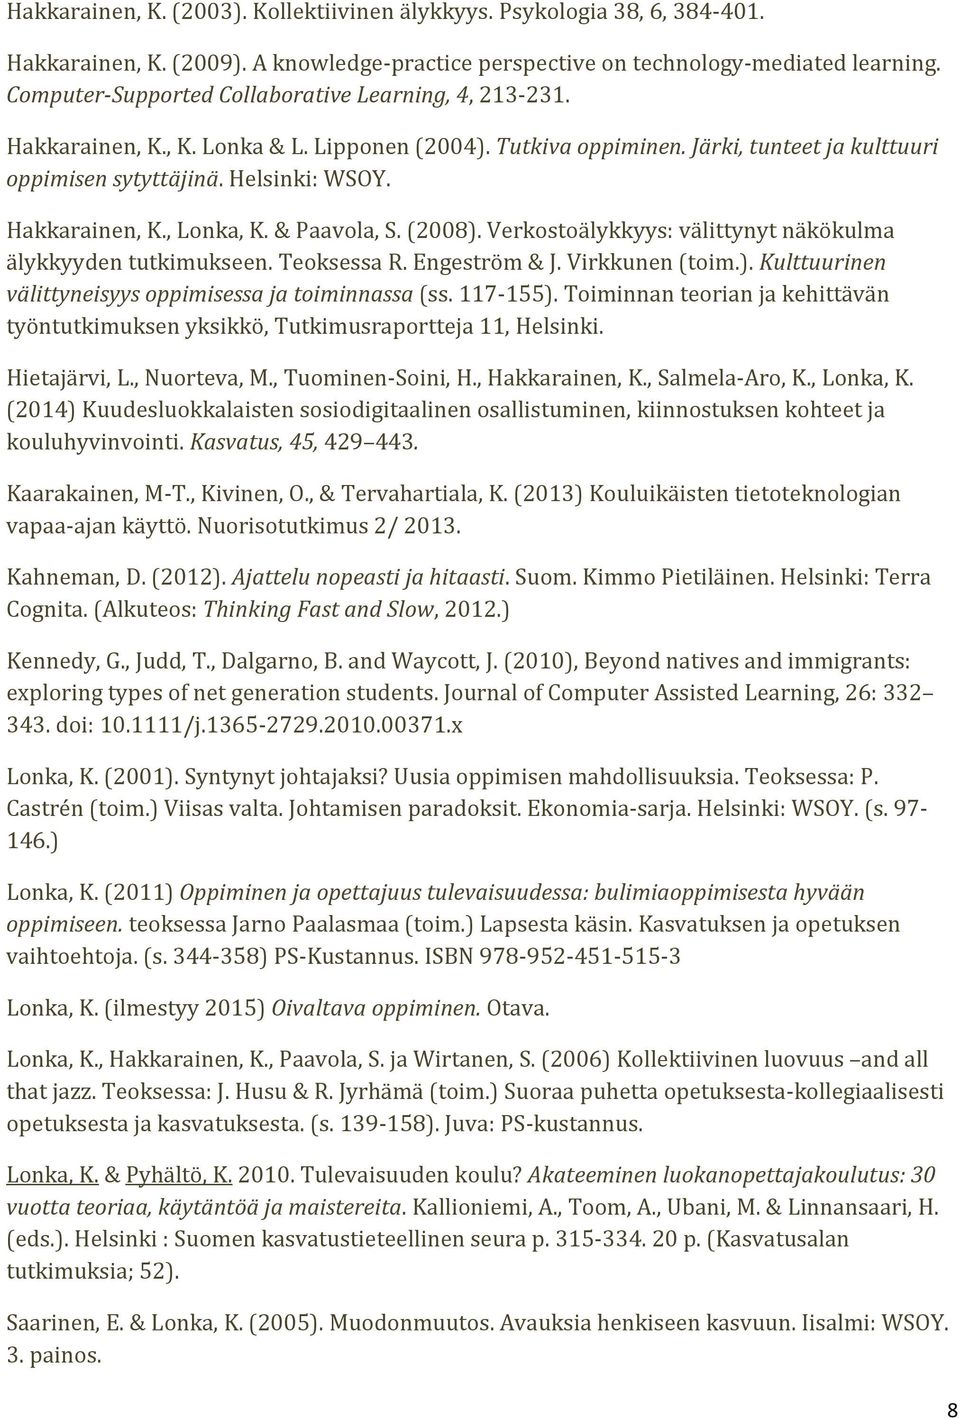 Hakkarainen, K., Lonka, K. & Paavola, S. (2008). Verkostoälykkyys: välittynyt näkökulma älykkyyden tutkimukseen. Teoksessa R. Engeström & J. Virkkunen (toim.). Kulttuurinen välittyneisyys oppimisessa ja toiminnassa (ss.